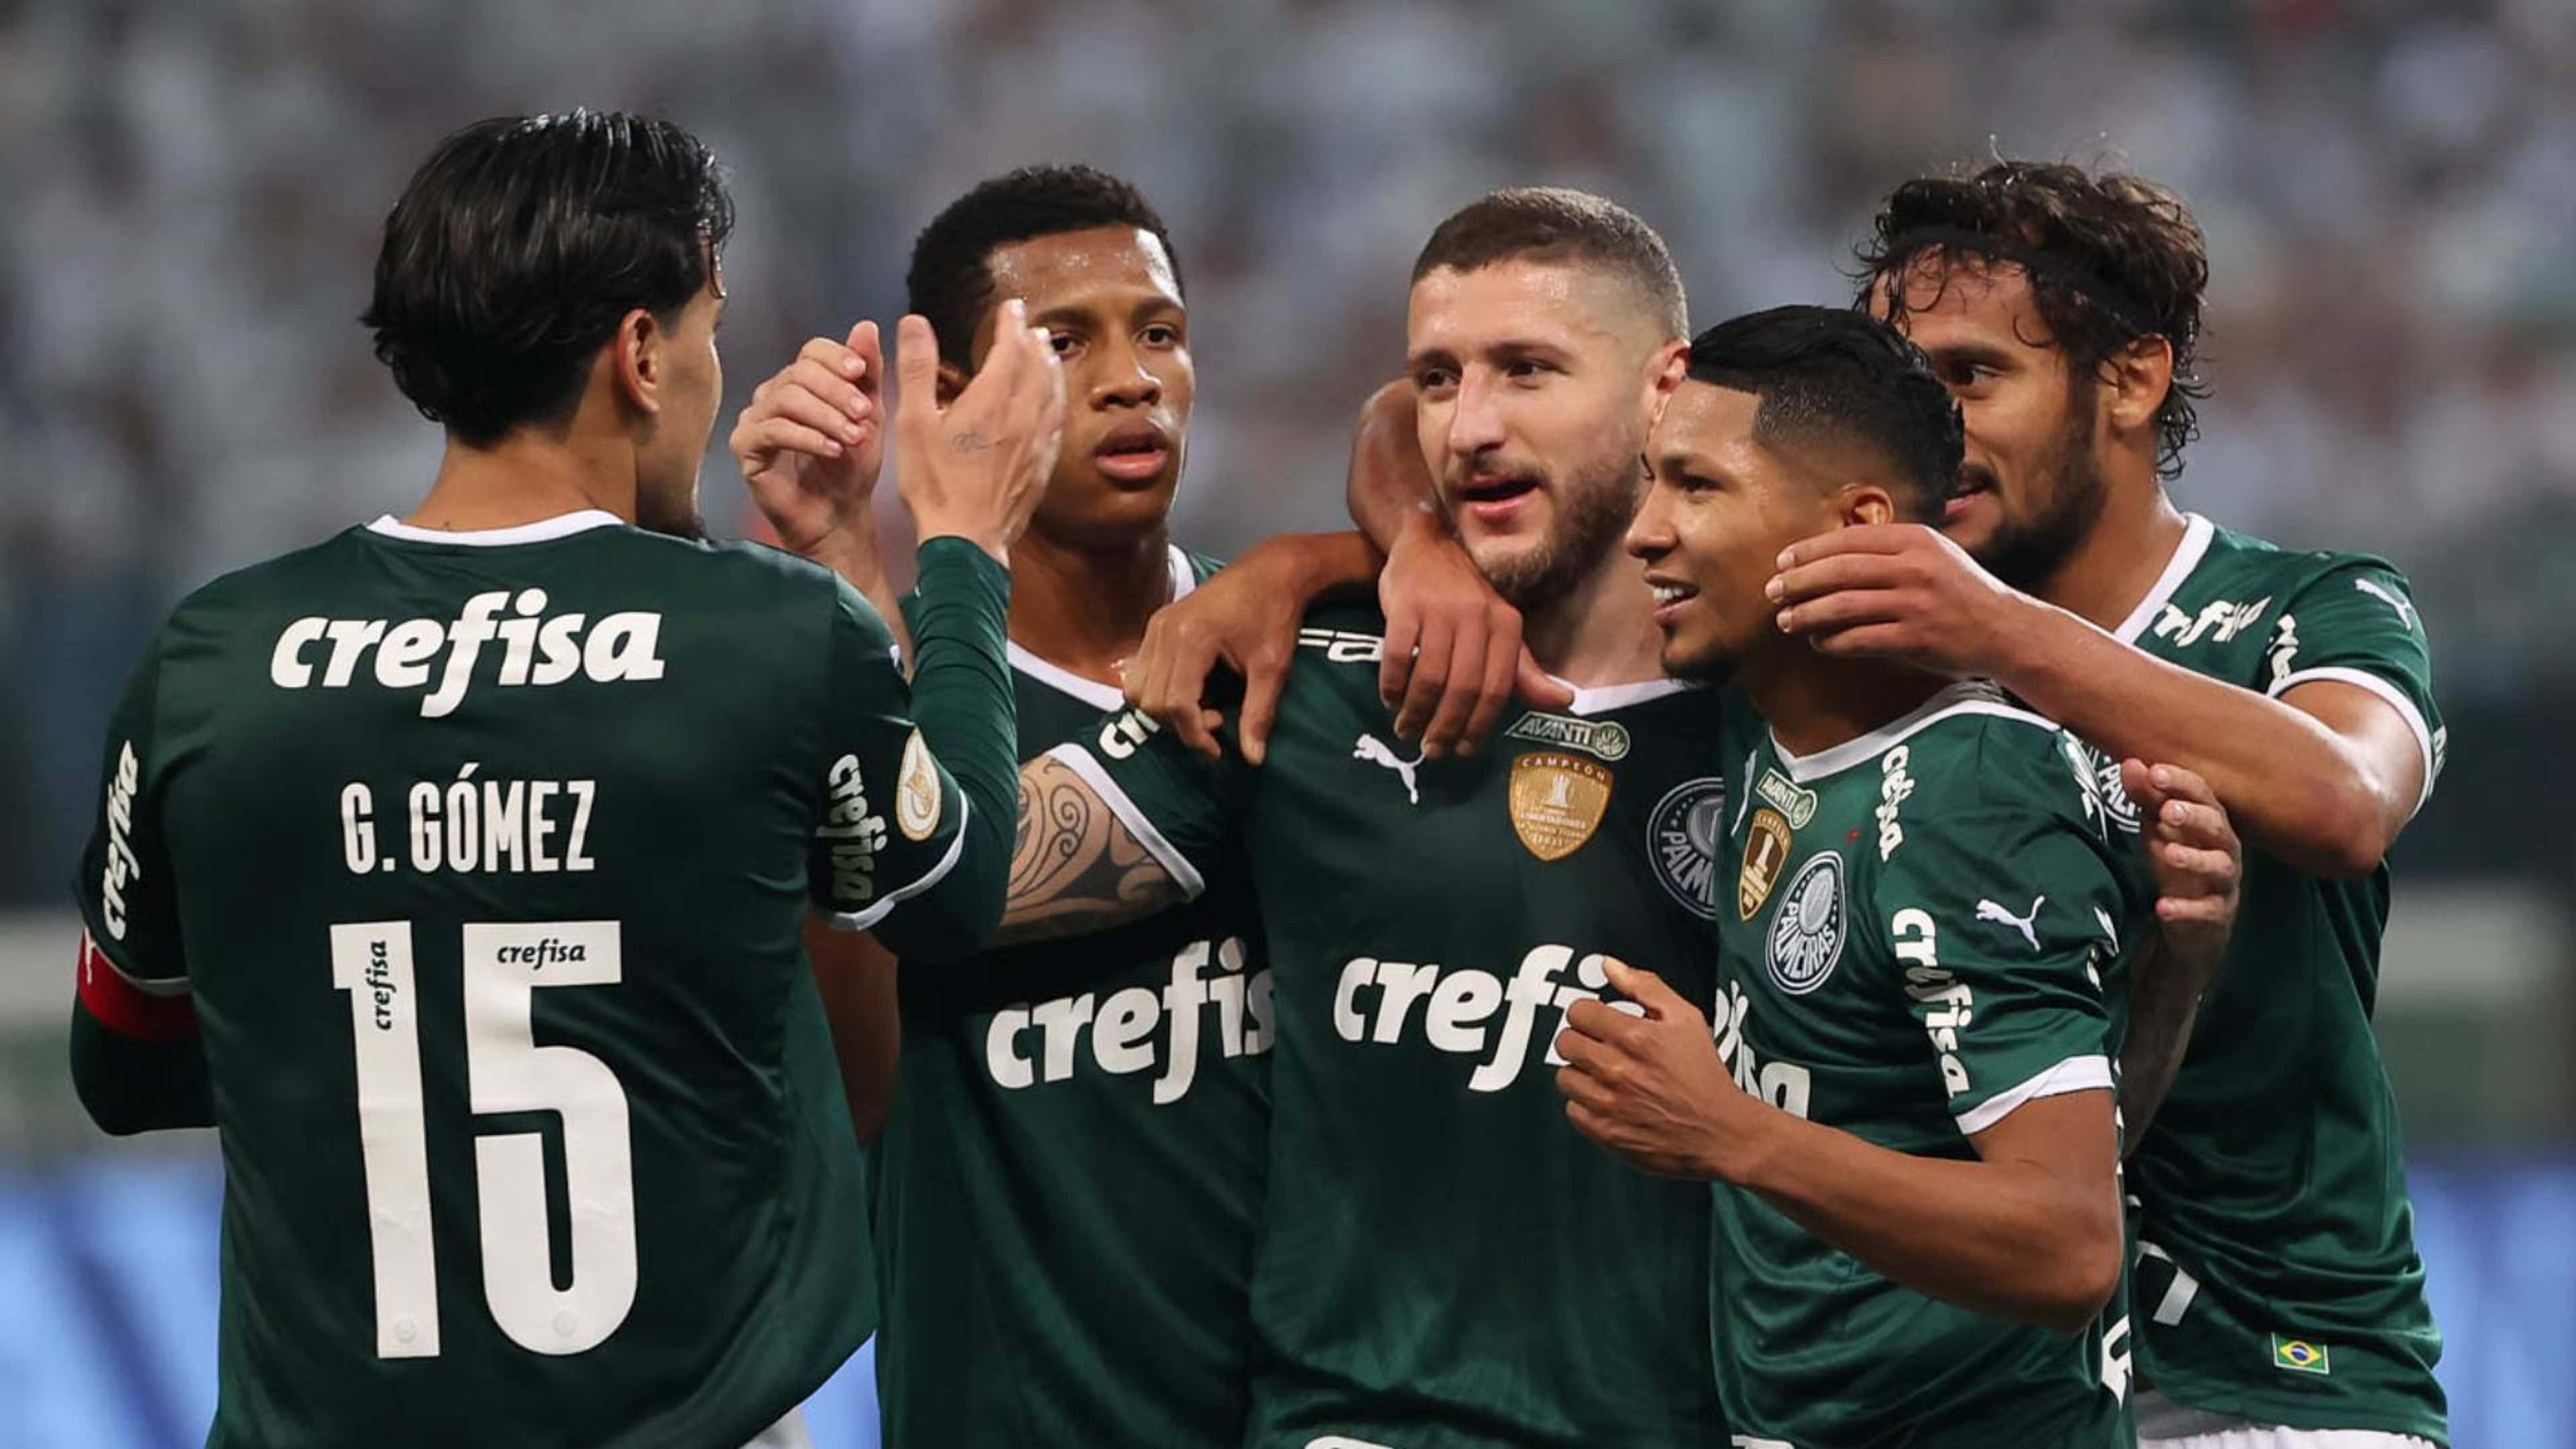 Palmeiras x Atlético-GO ao vivo: Saiba como assistir na TV e online pelo  Brasileirão